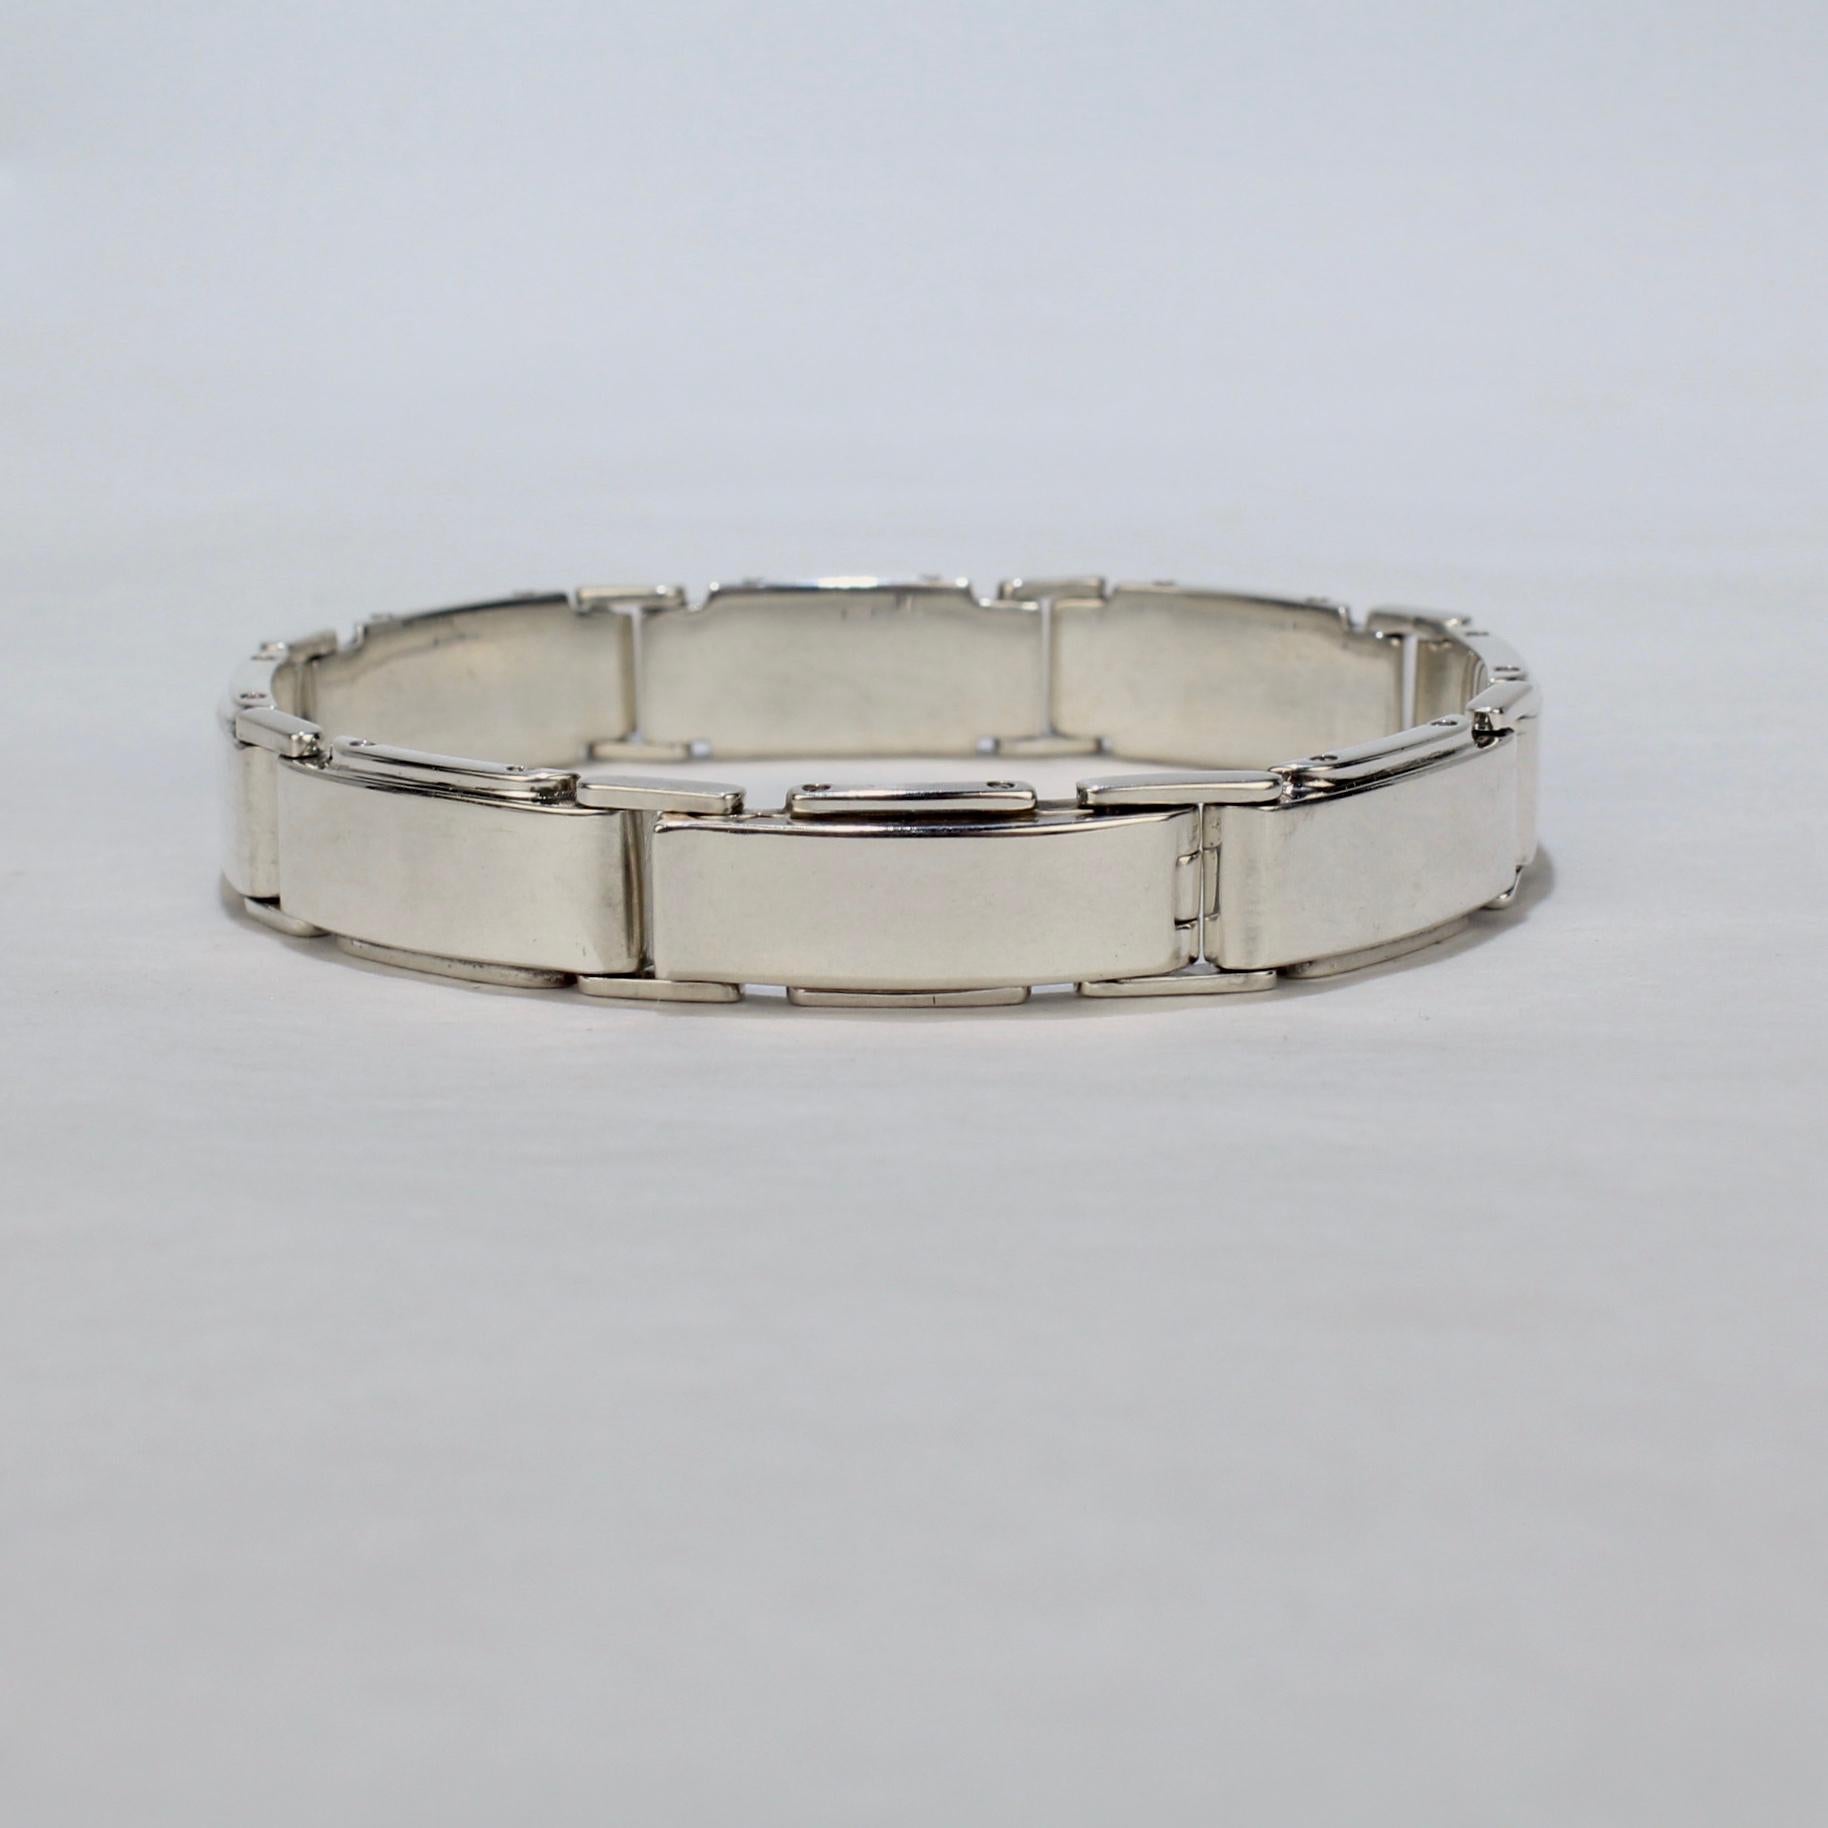 Ein Vintage-Armband von Tiffany & Co.

Aus Sterlingsilber. 

Im Metropolis-Muster mit leicht konvexen, rechteckigen Gliedern im Machin-Age-Stil mit Nietenimitation an den Seiten.

Einfach ein starkes, maskulines Gliederarmband von